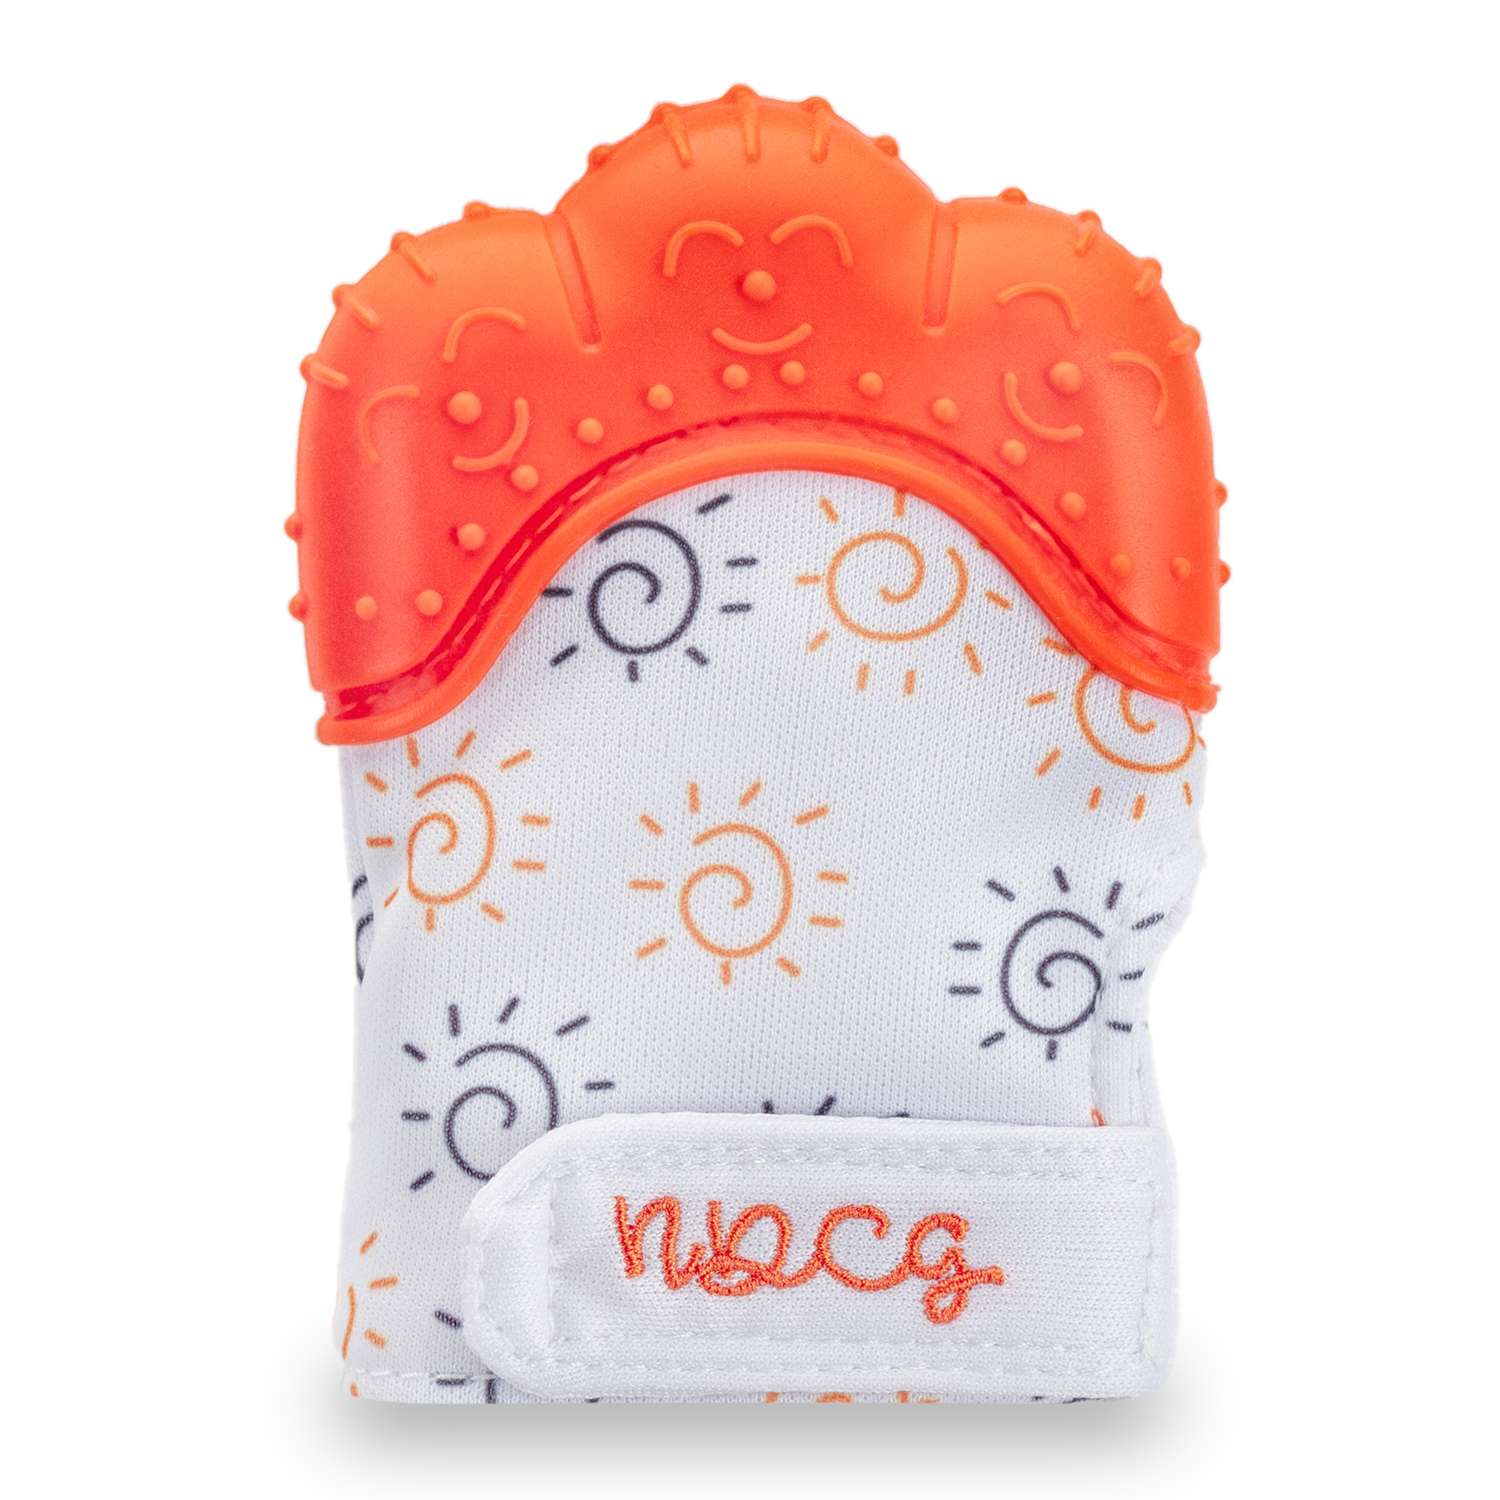 Прорезыватель силиконовый NDCG рукавичка от 3х до 12 месяцев оранжевый - фото 2